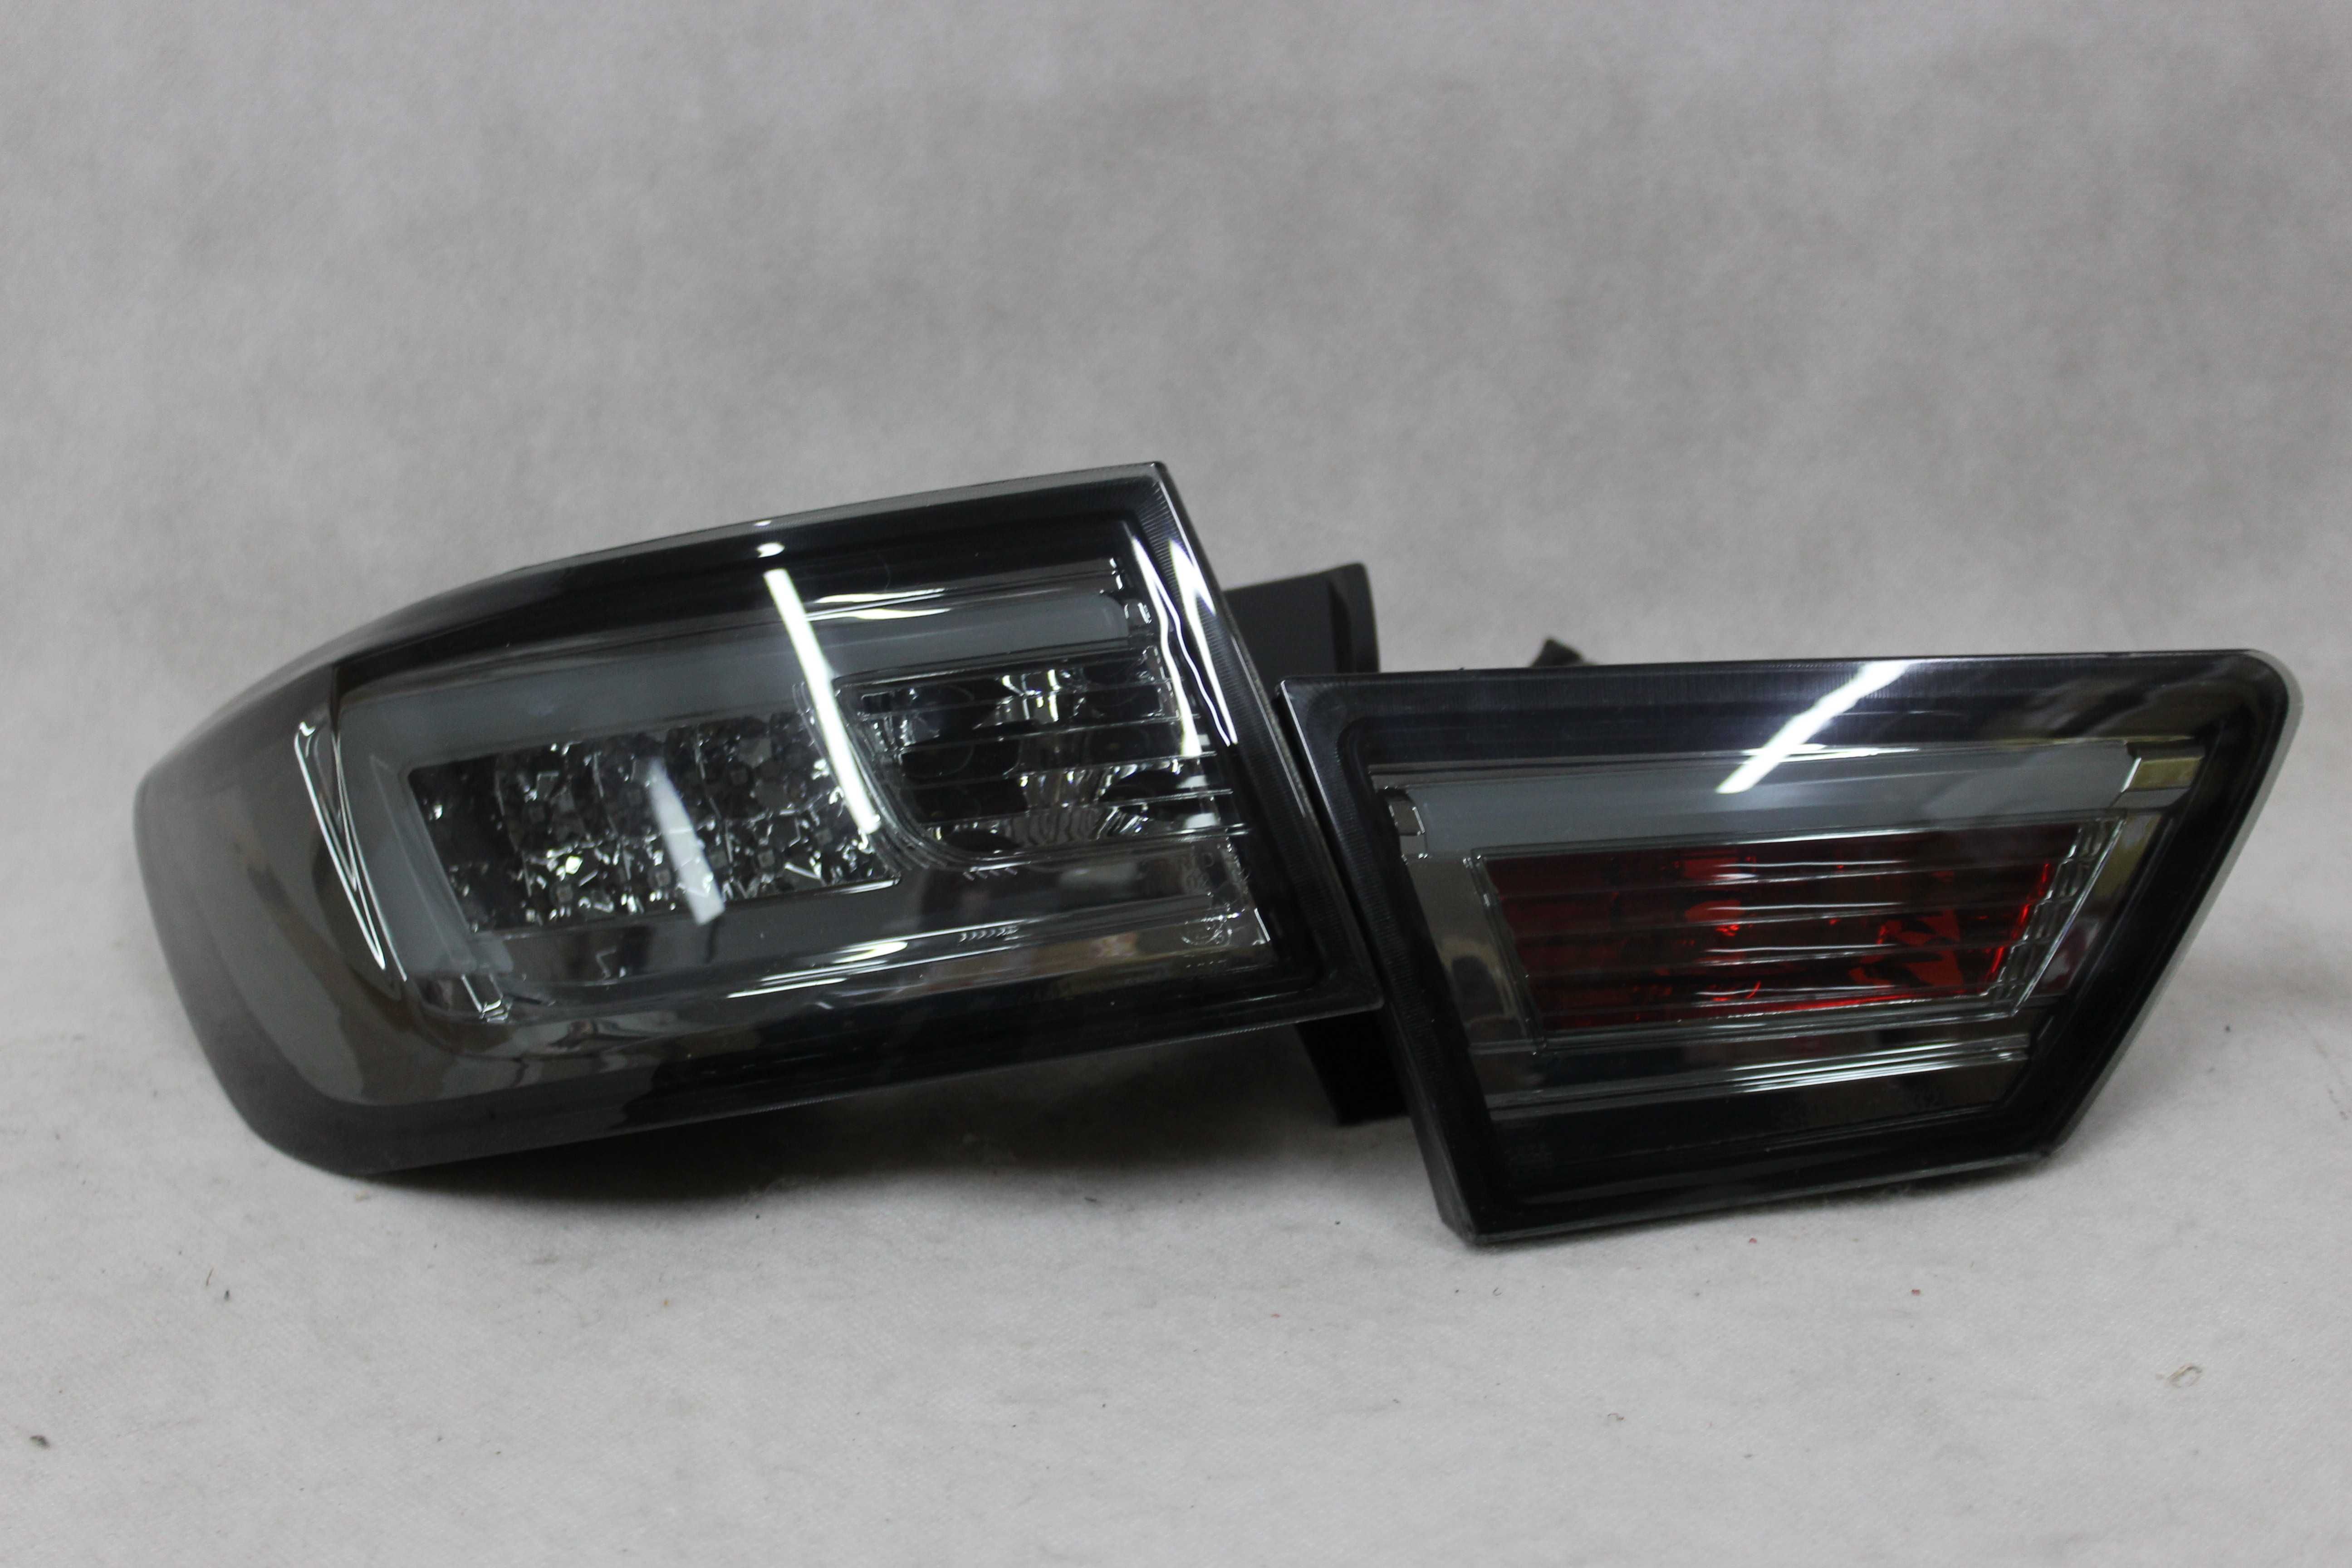 Lampy światła tył tylne RENAULT CLIO 4 IV 13-16 HB LED BAR NEON SMOKE!